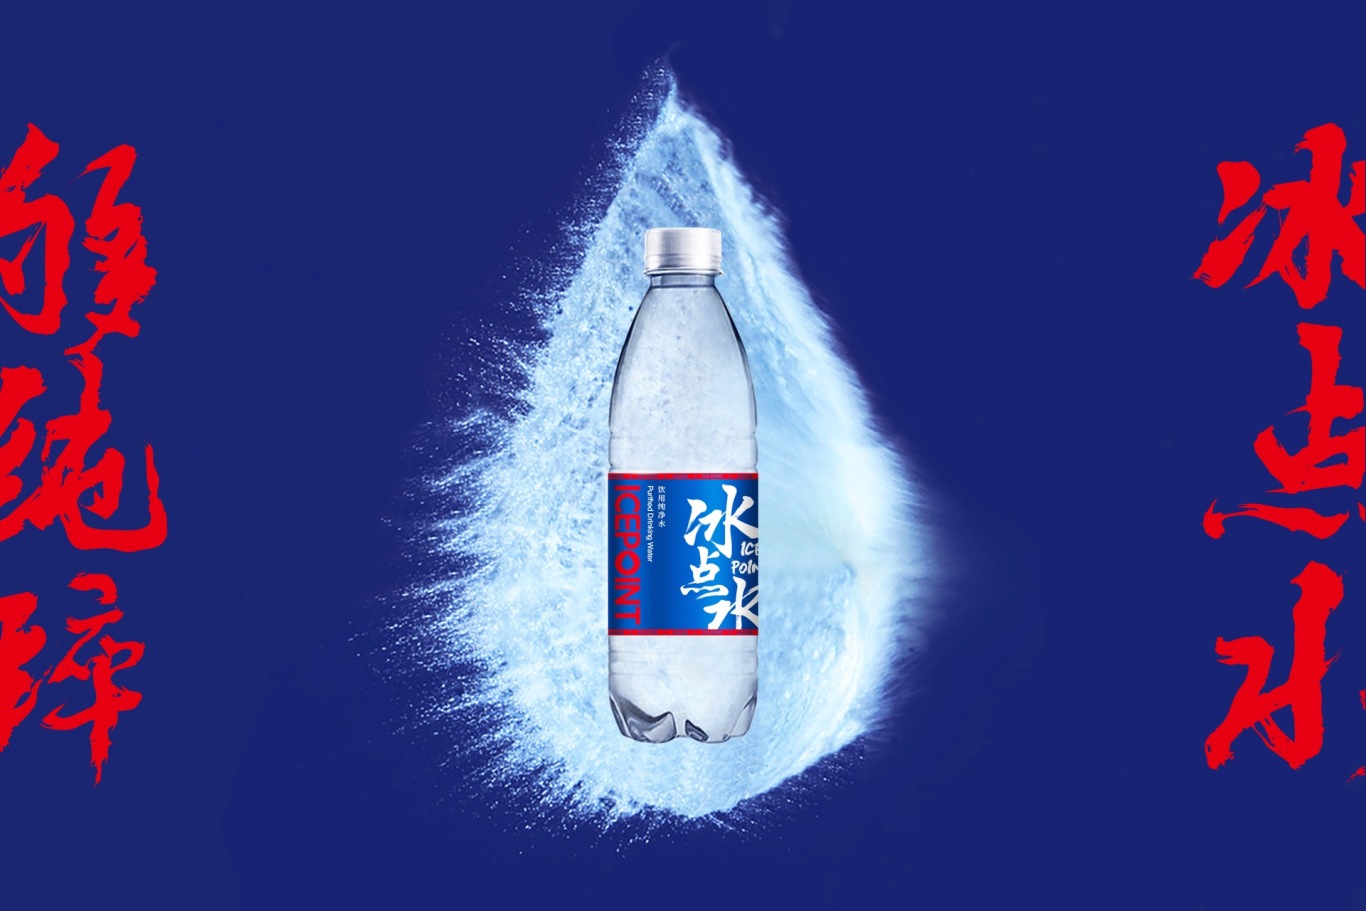 冰点水品牌LOGO包装升级设计图14